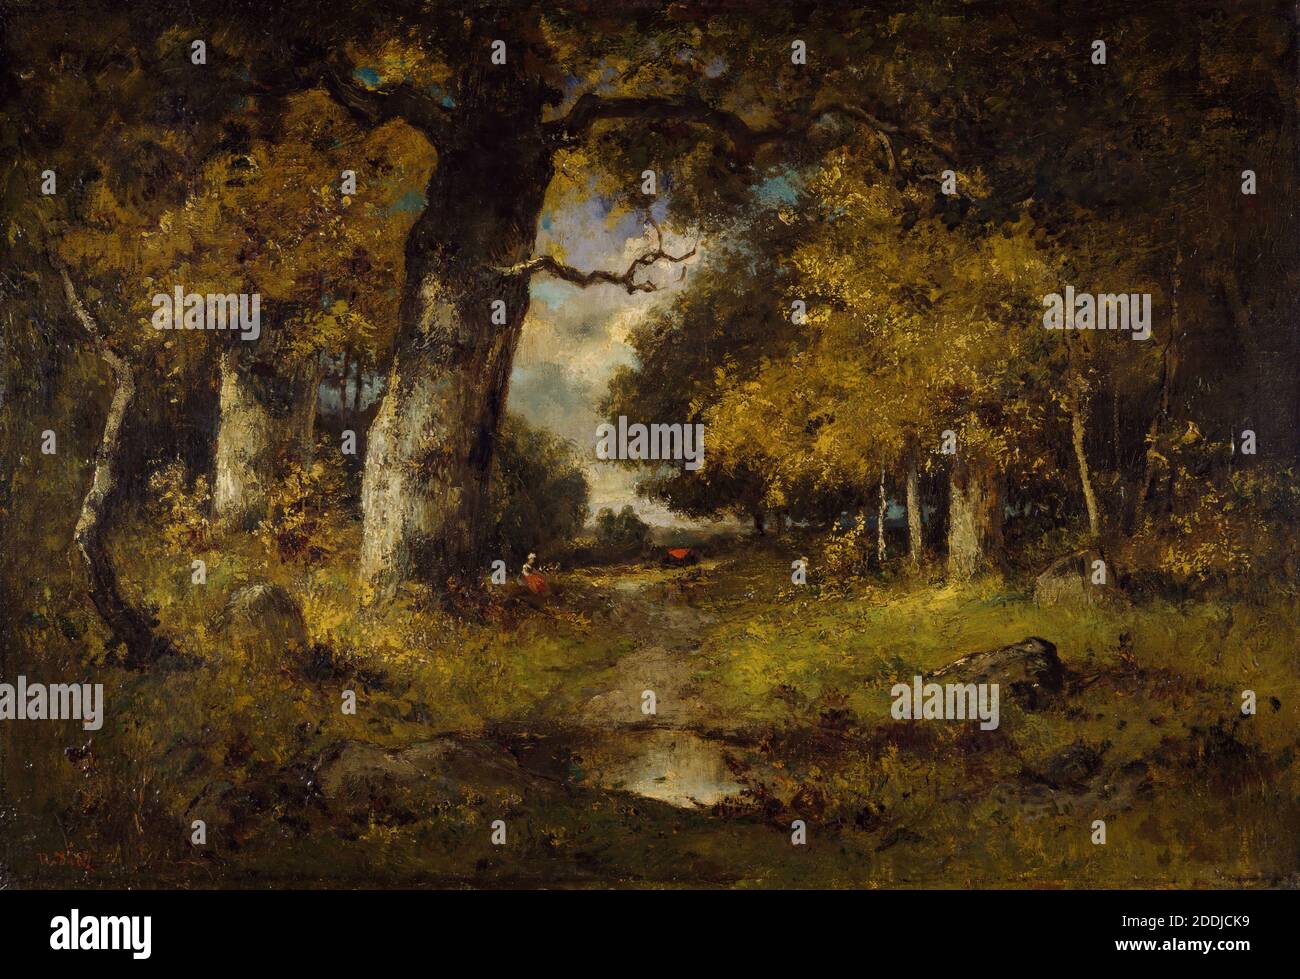 Scène forestière, 1876 par Narcisse Diaz de la Pena, arbre, Paysage, peinture à l'huile, ancien Maître, Forêt, mouvement artistique, École de Barbizon Banque D'Images